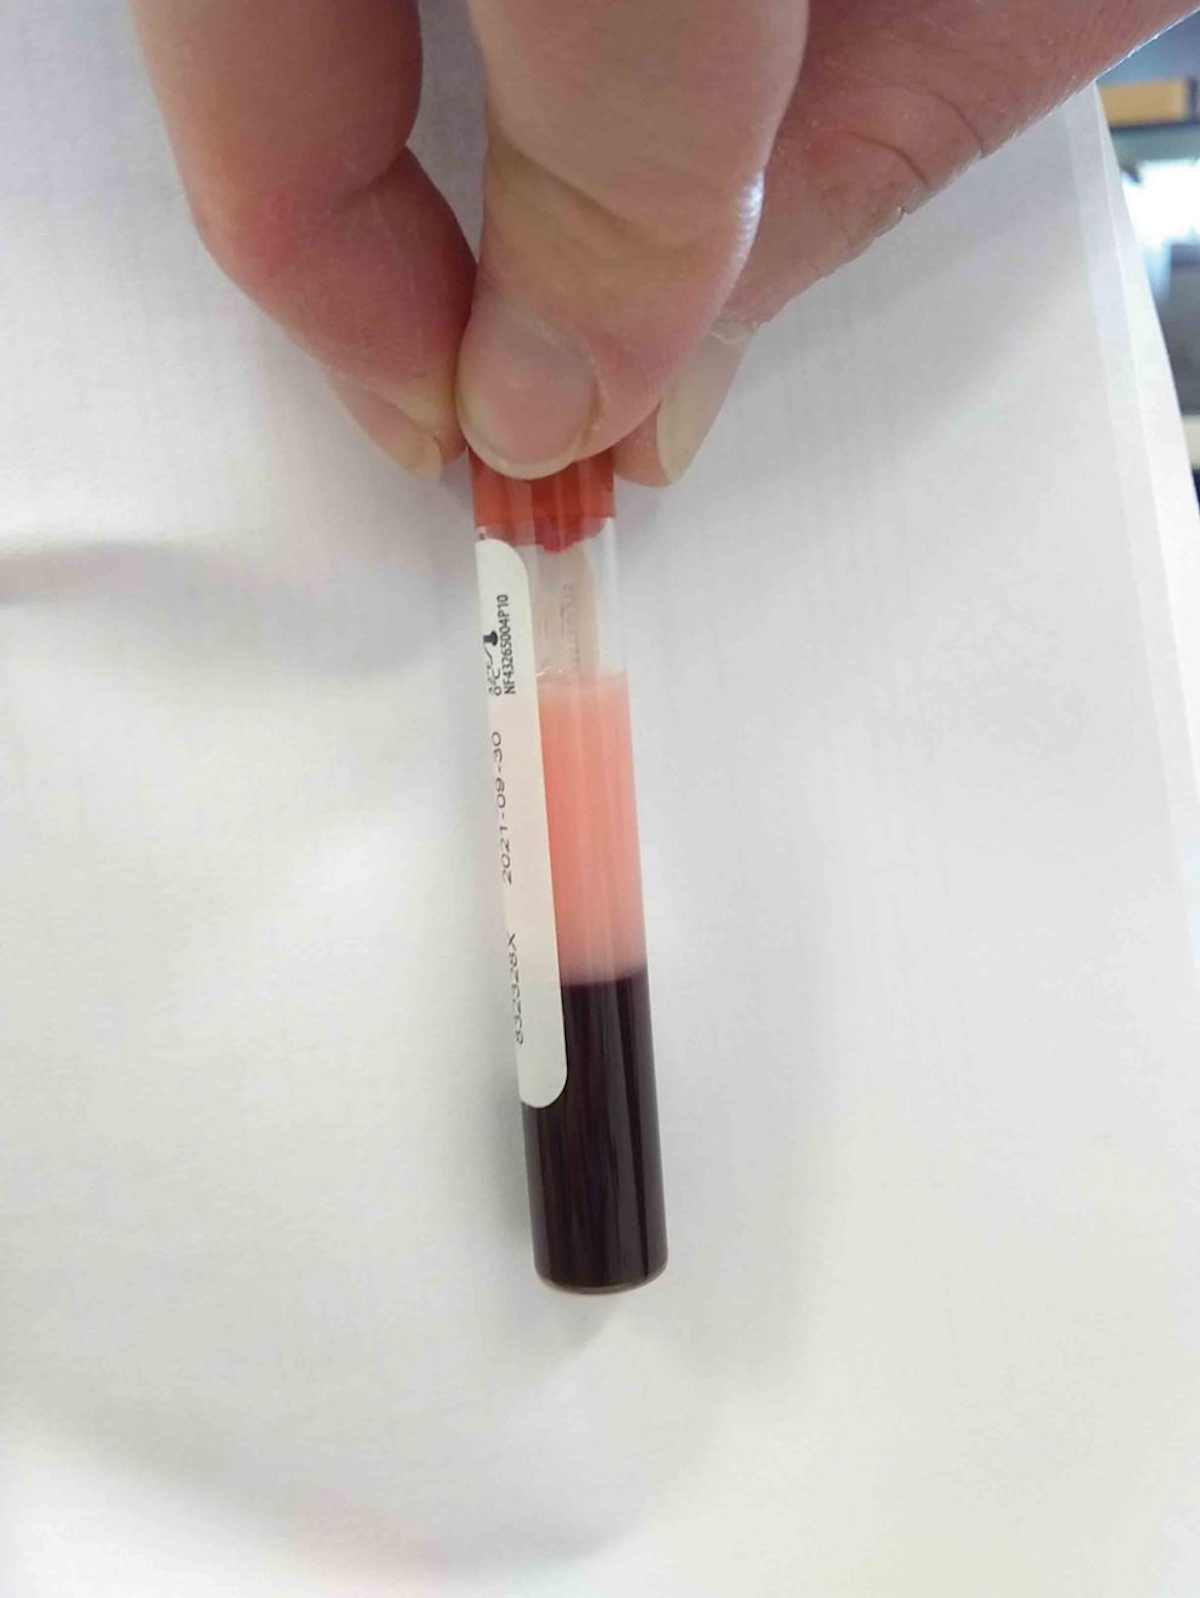 O soro lipêmico de uma amostra de sangue pode ser indicativo de hipertrigliceridemia. A lipemia macroscópica indica um aumento dos triglicerídeos de pelo menos 200 mg/dL.